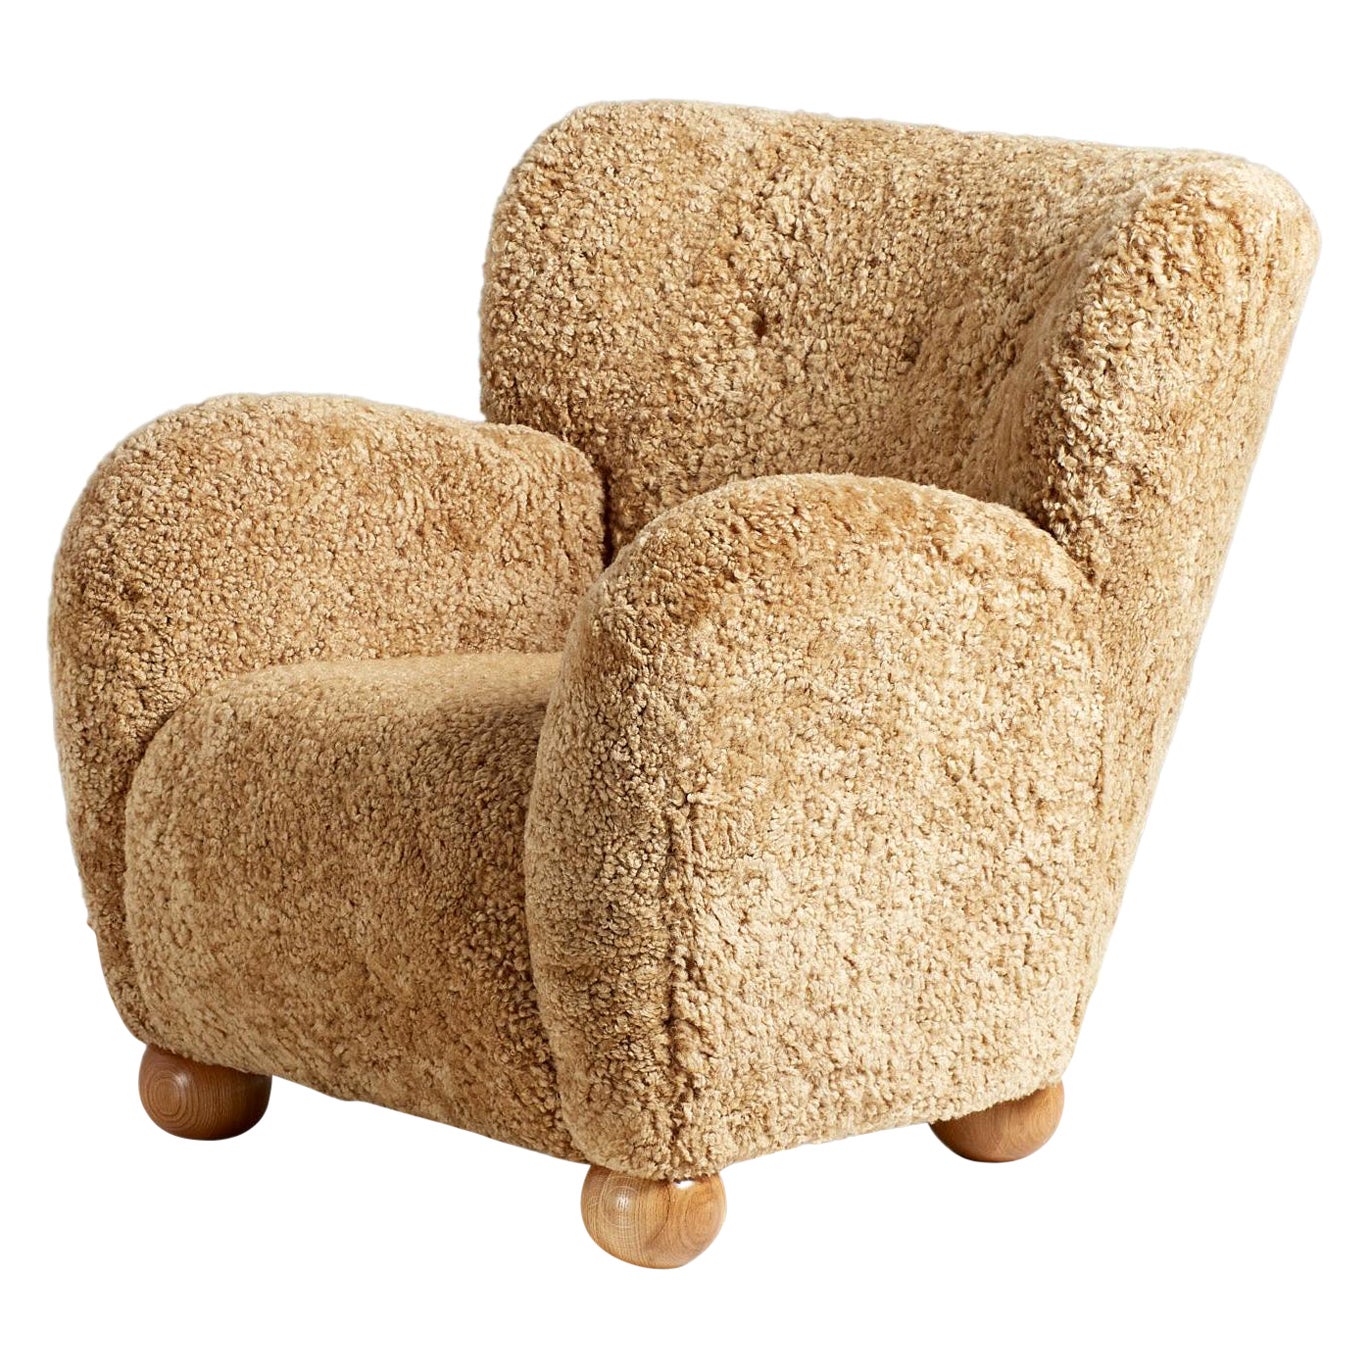 Maßgefertigter Schafsfell-Sessel